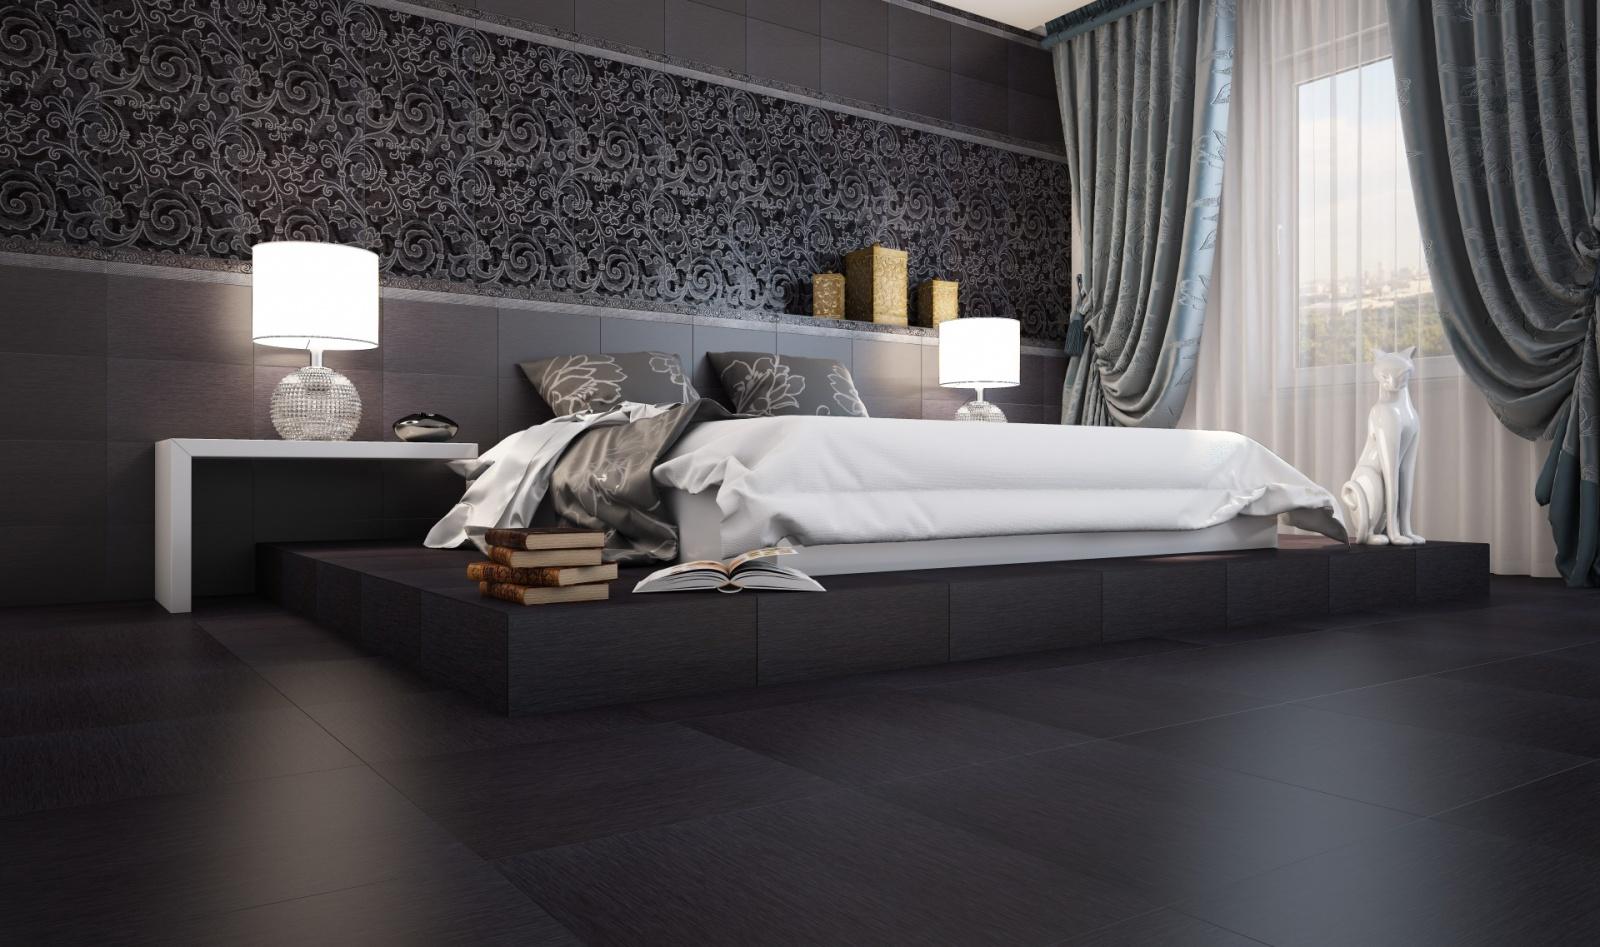 Плитка в спальне: фото интерьера с плиткой на полу и на стене